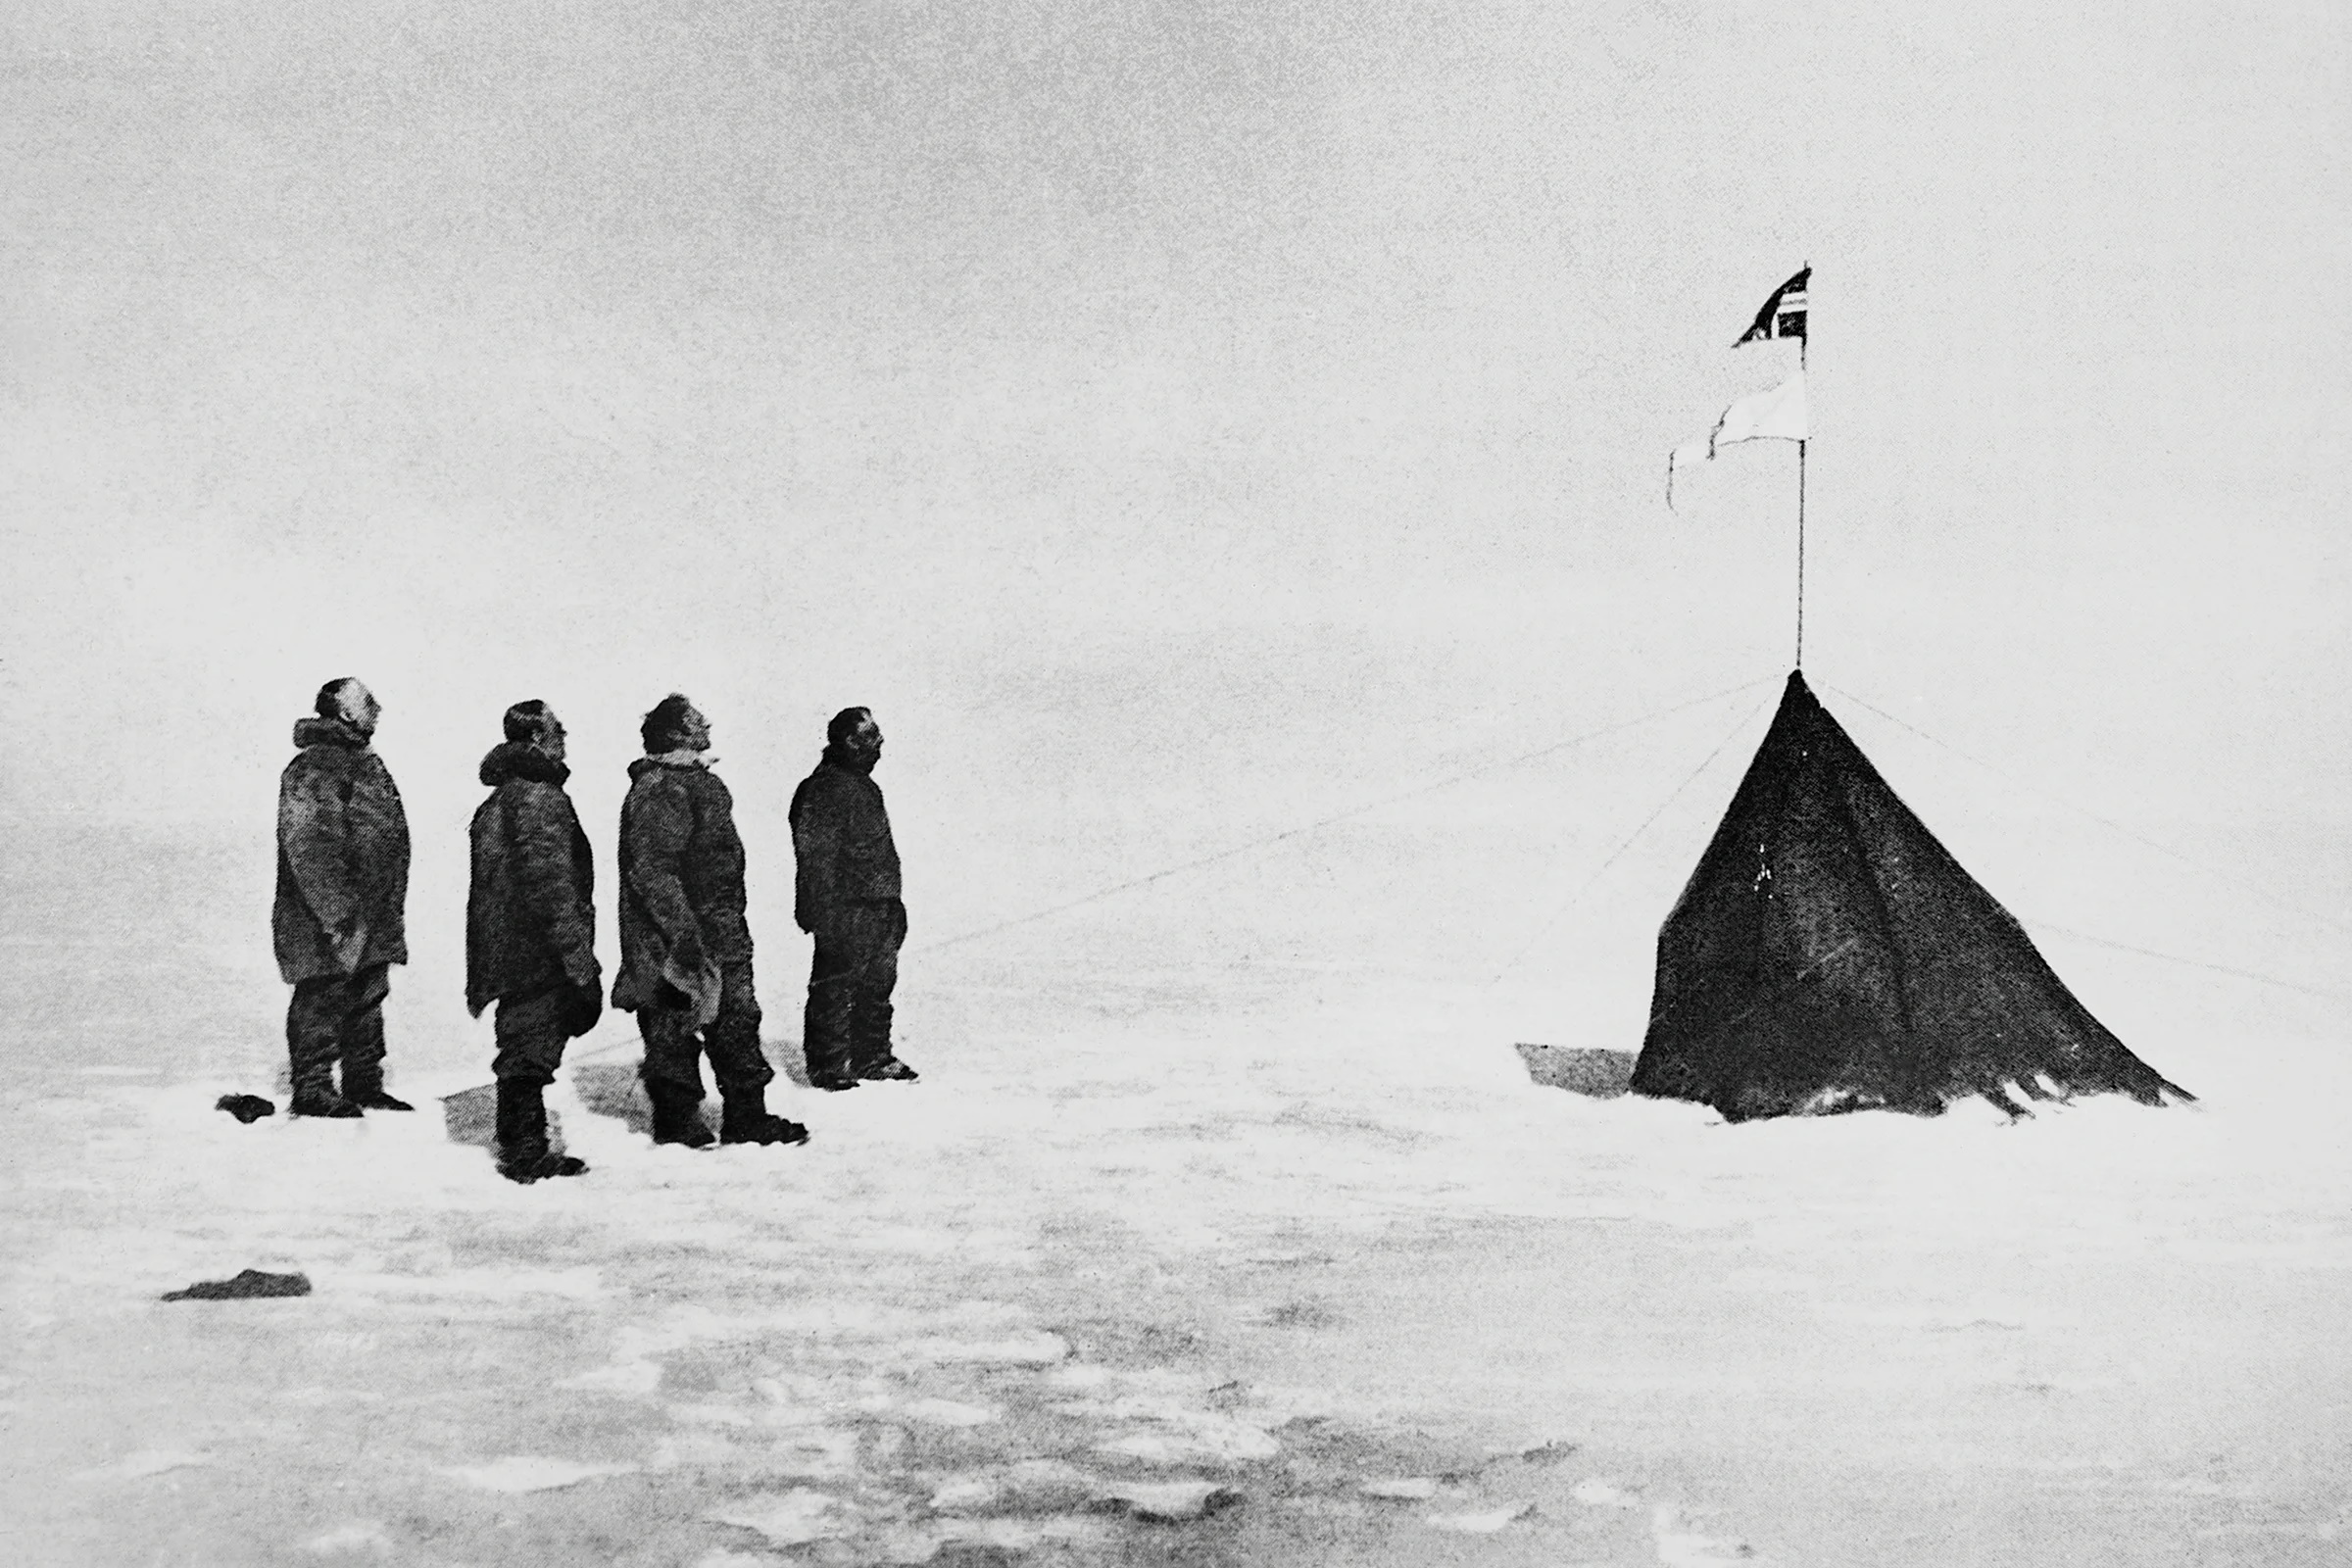 من كان أول شخص وصل إلى القطب الجنوبي؟